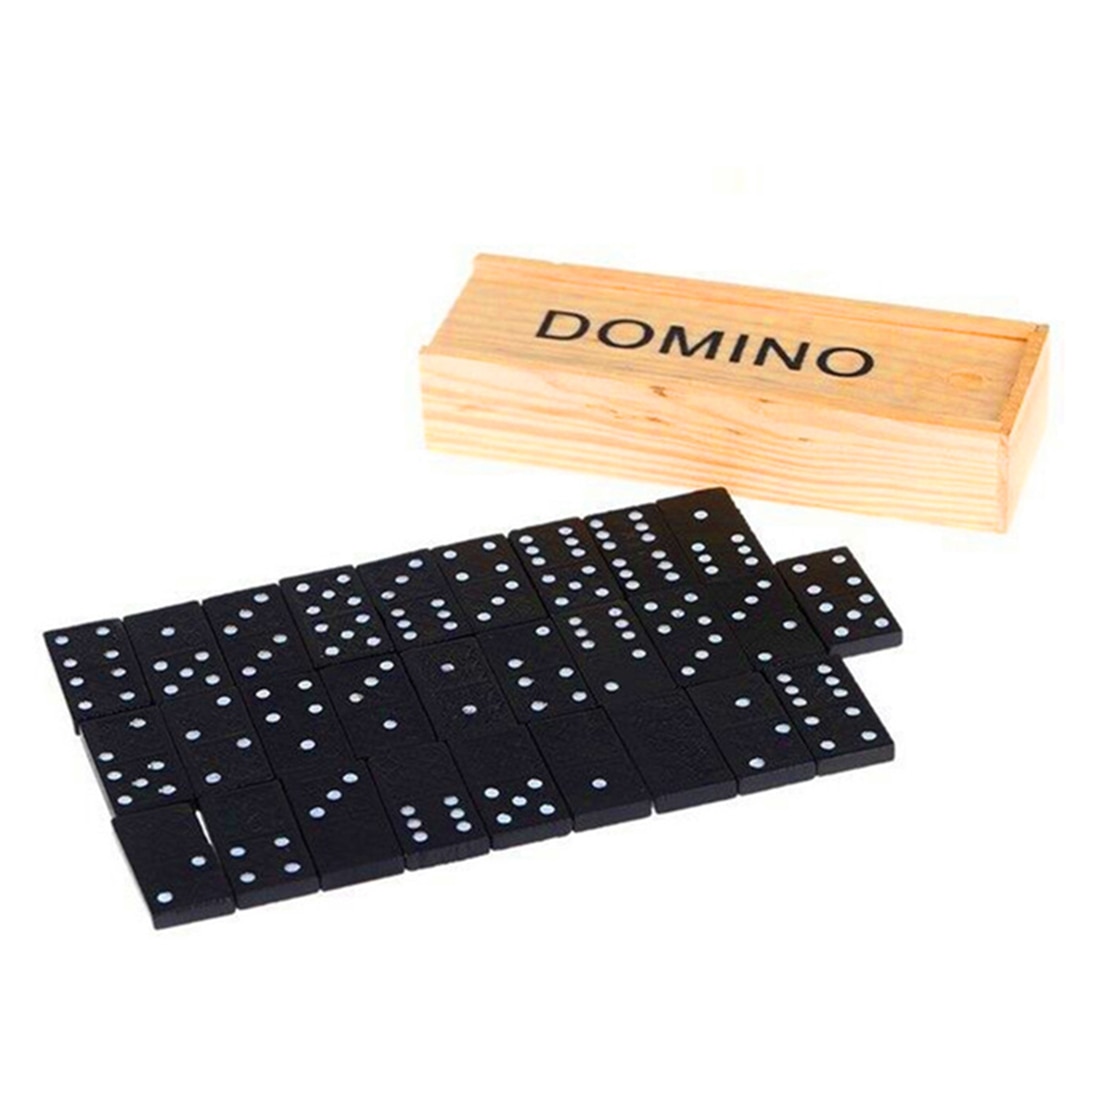 28 stk dominos brætspil læremidler pædagogisk legetøj til børn med trækasse - sort